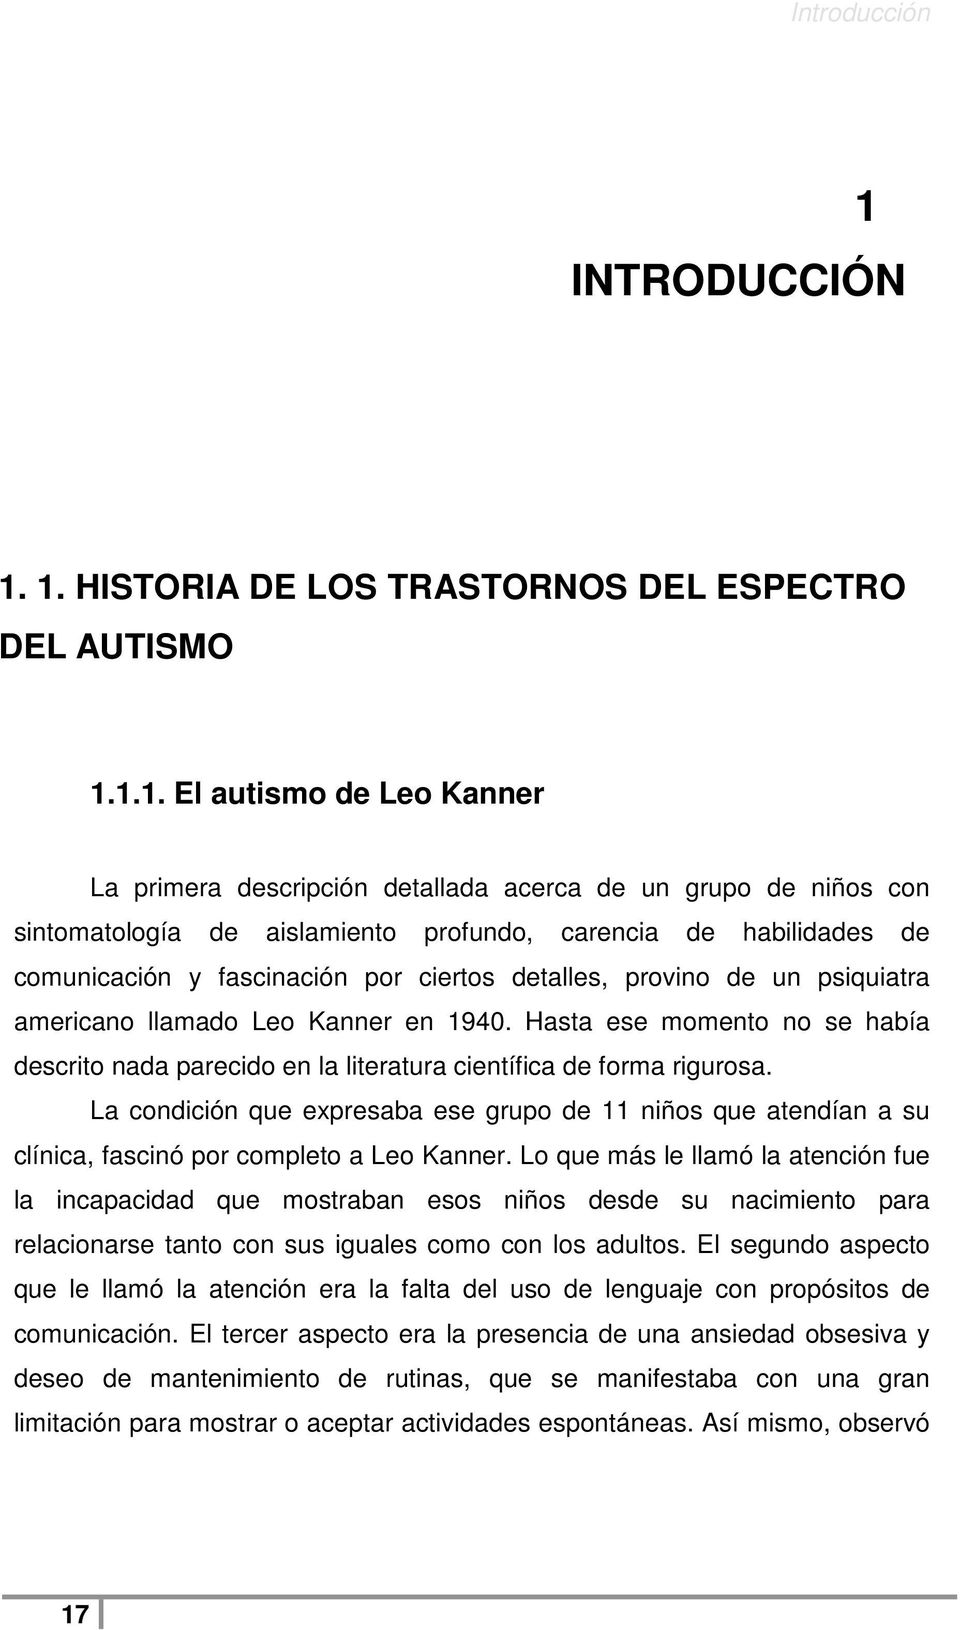 1. HISTORIA DE LOS TRASTORNOS DEL ESPECTRO DEL AUTISMO 1.1.1. El autismo de Leo Kanner La primera descripción detallada acerca de un grupo de niños con sintomatología de aislamiento profundo,